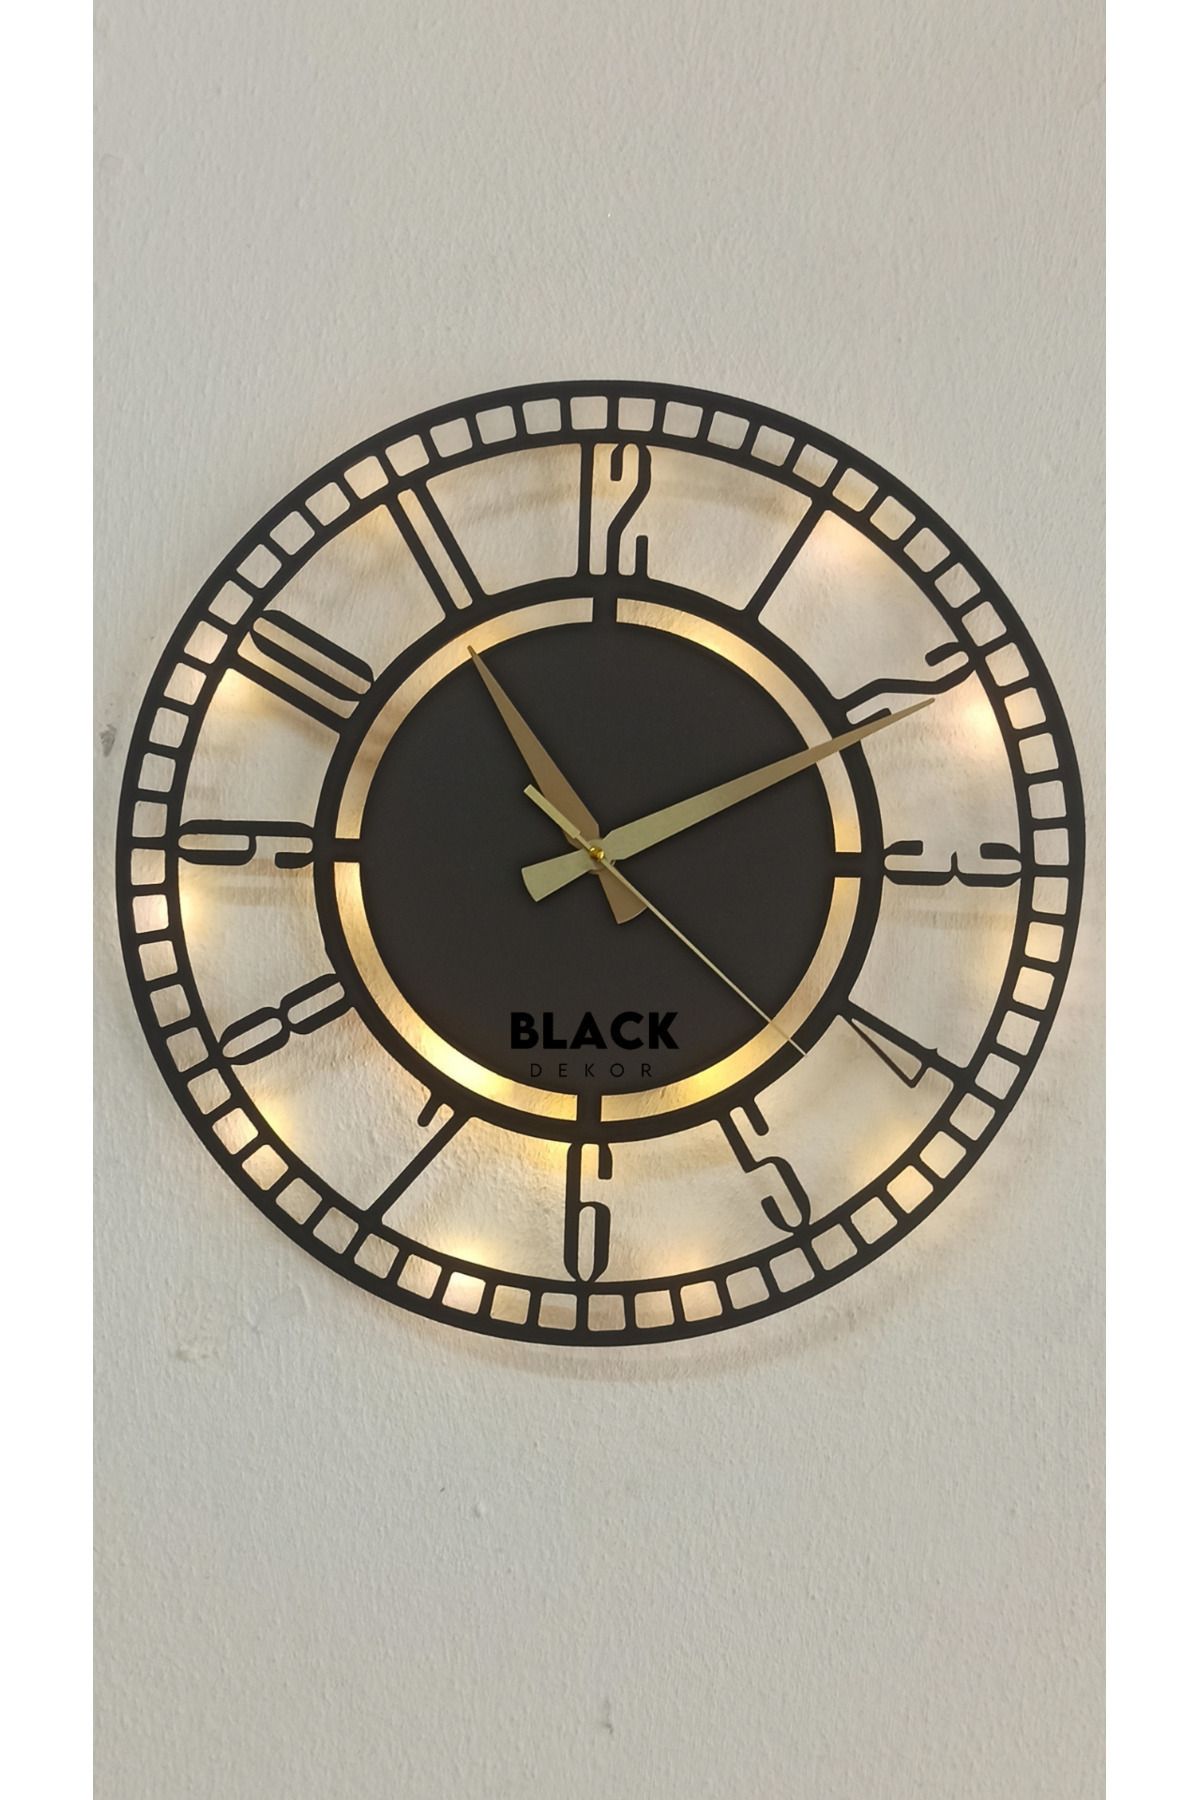 Blackdekor Modern Duvar Saati Oturma Odası Duvar Saati Misafir Odası Saati Mutfak Duvar Saati